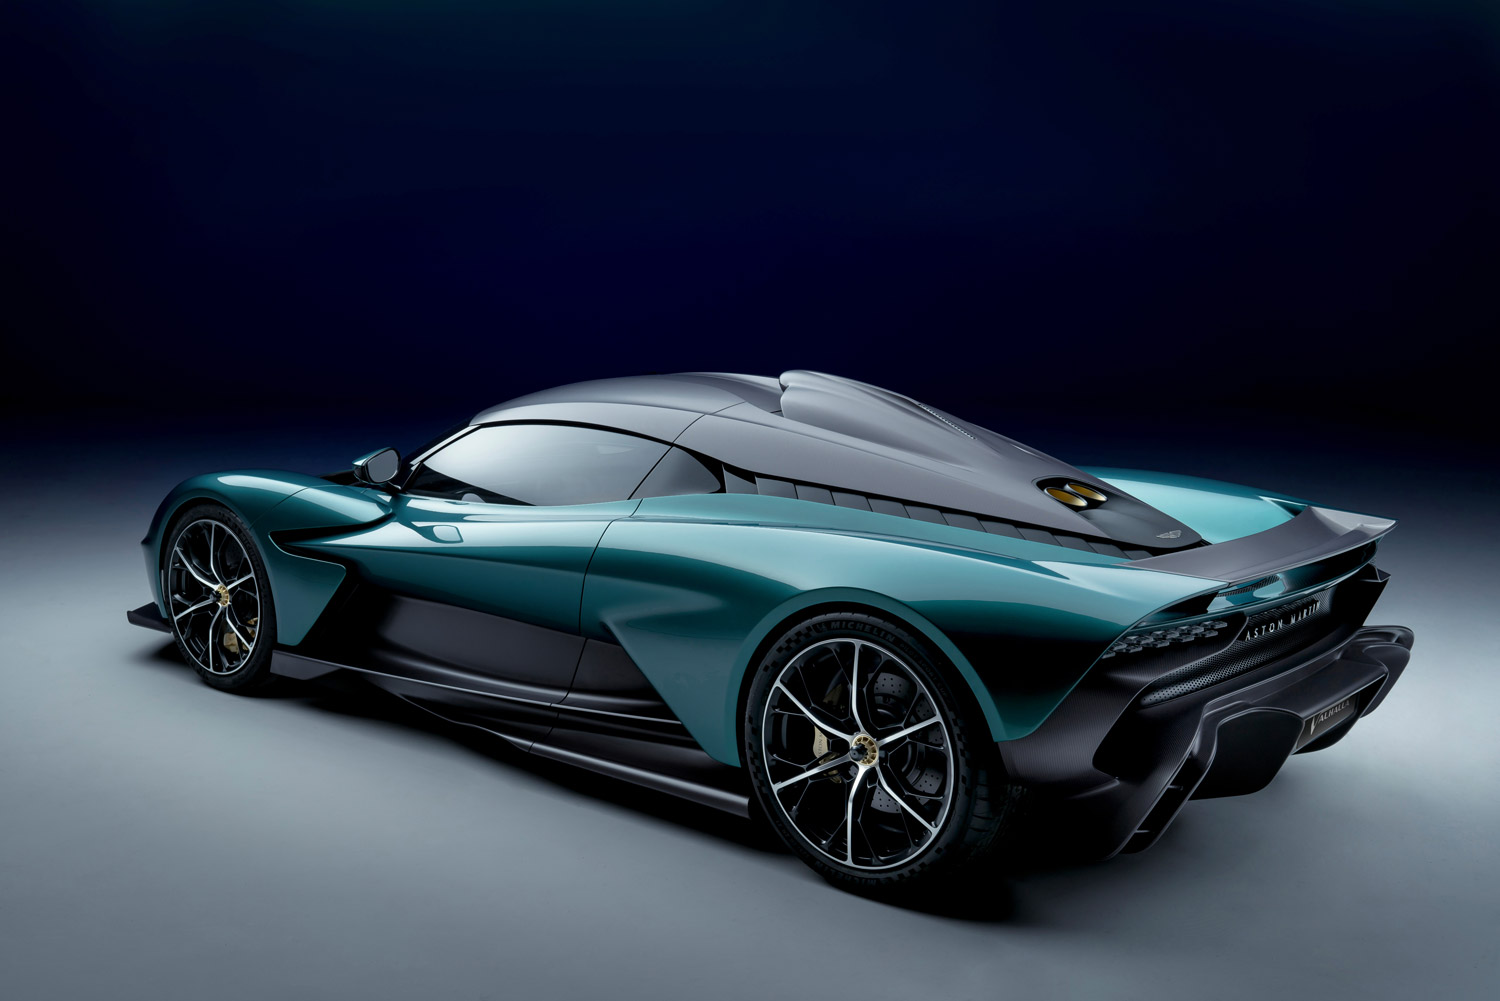 La Valhalla è la nuova supercar ibrida con la quale Aston Martin definisce, in modo sensazionale, la sua maestria nel guidare. 